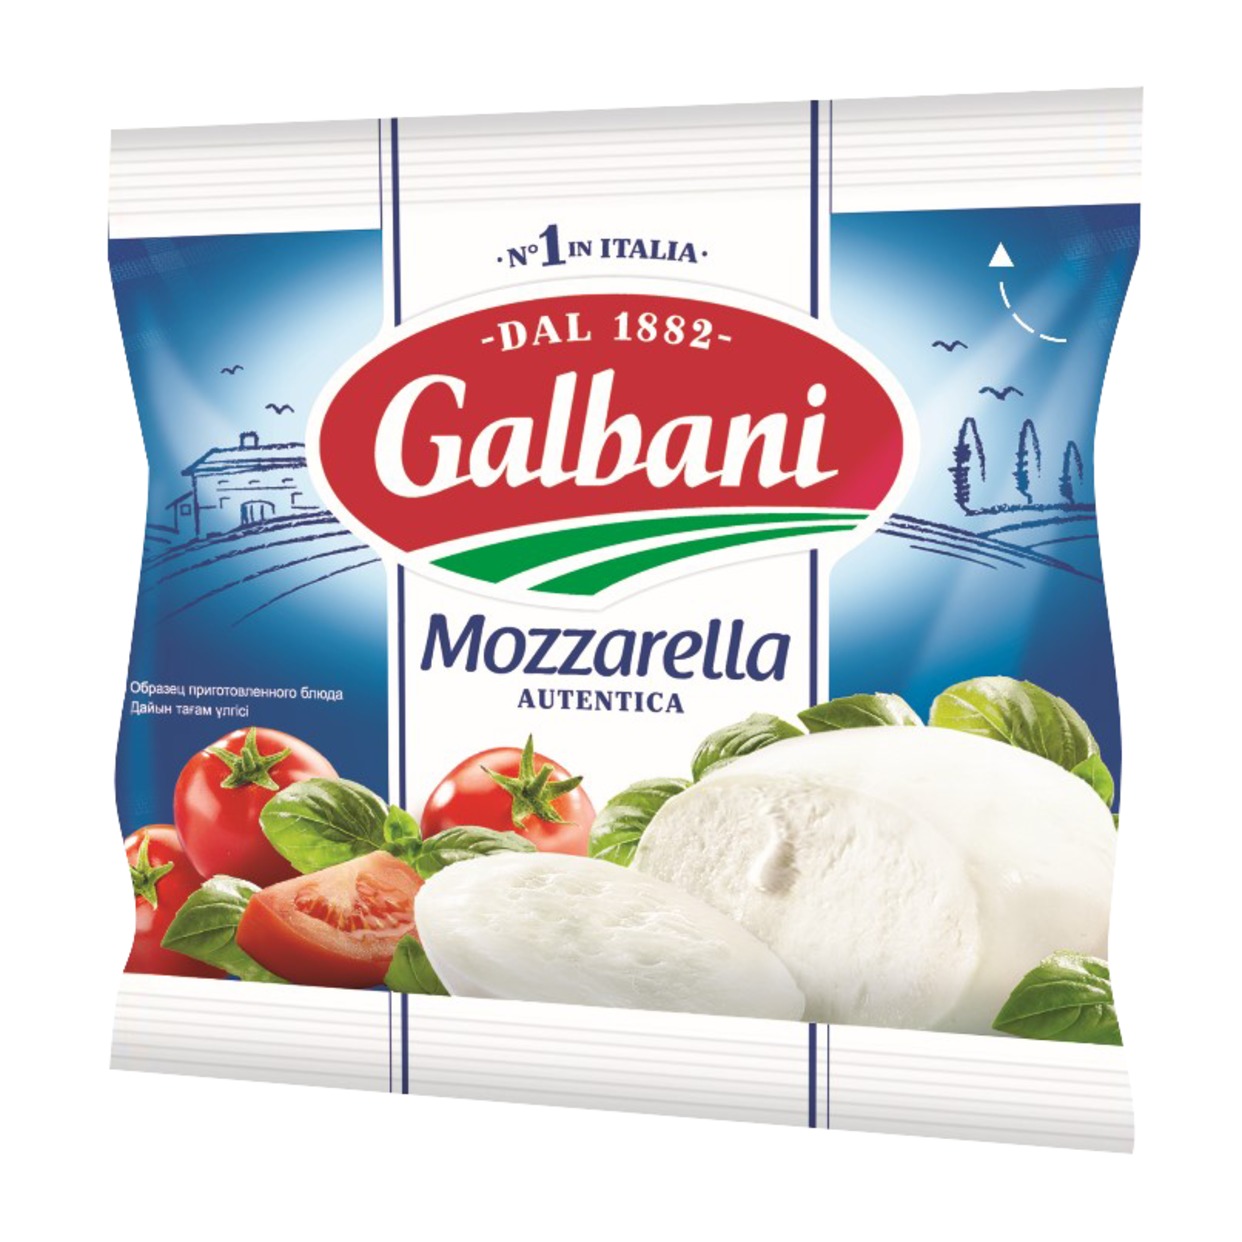 Сыр Mozzarella, Galbani, 45%, 125 г по акции в Пятерочке